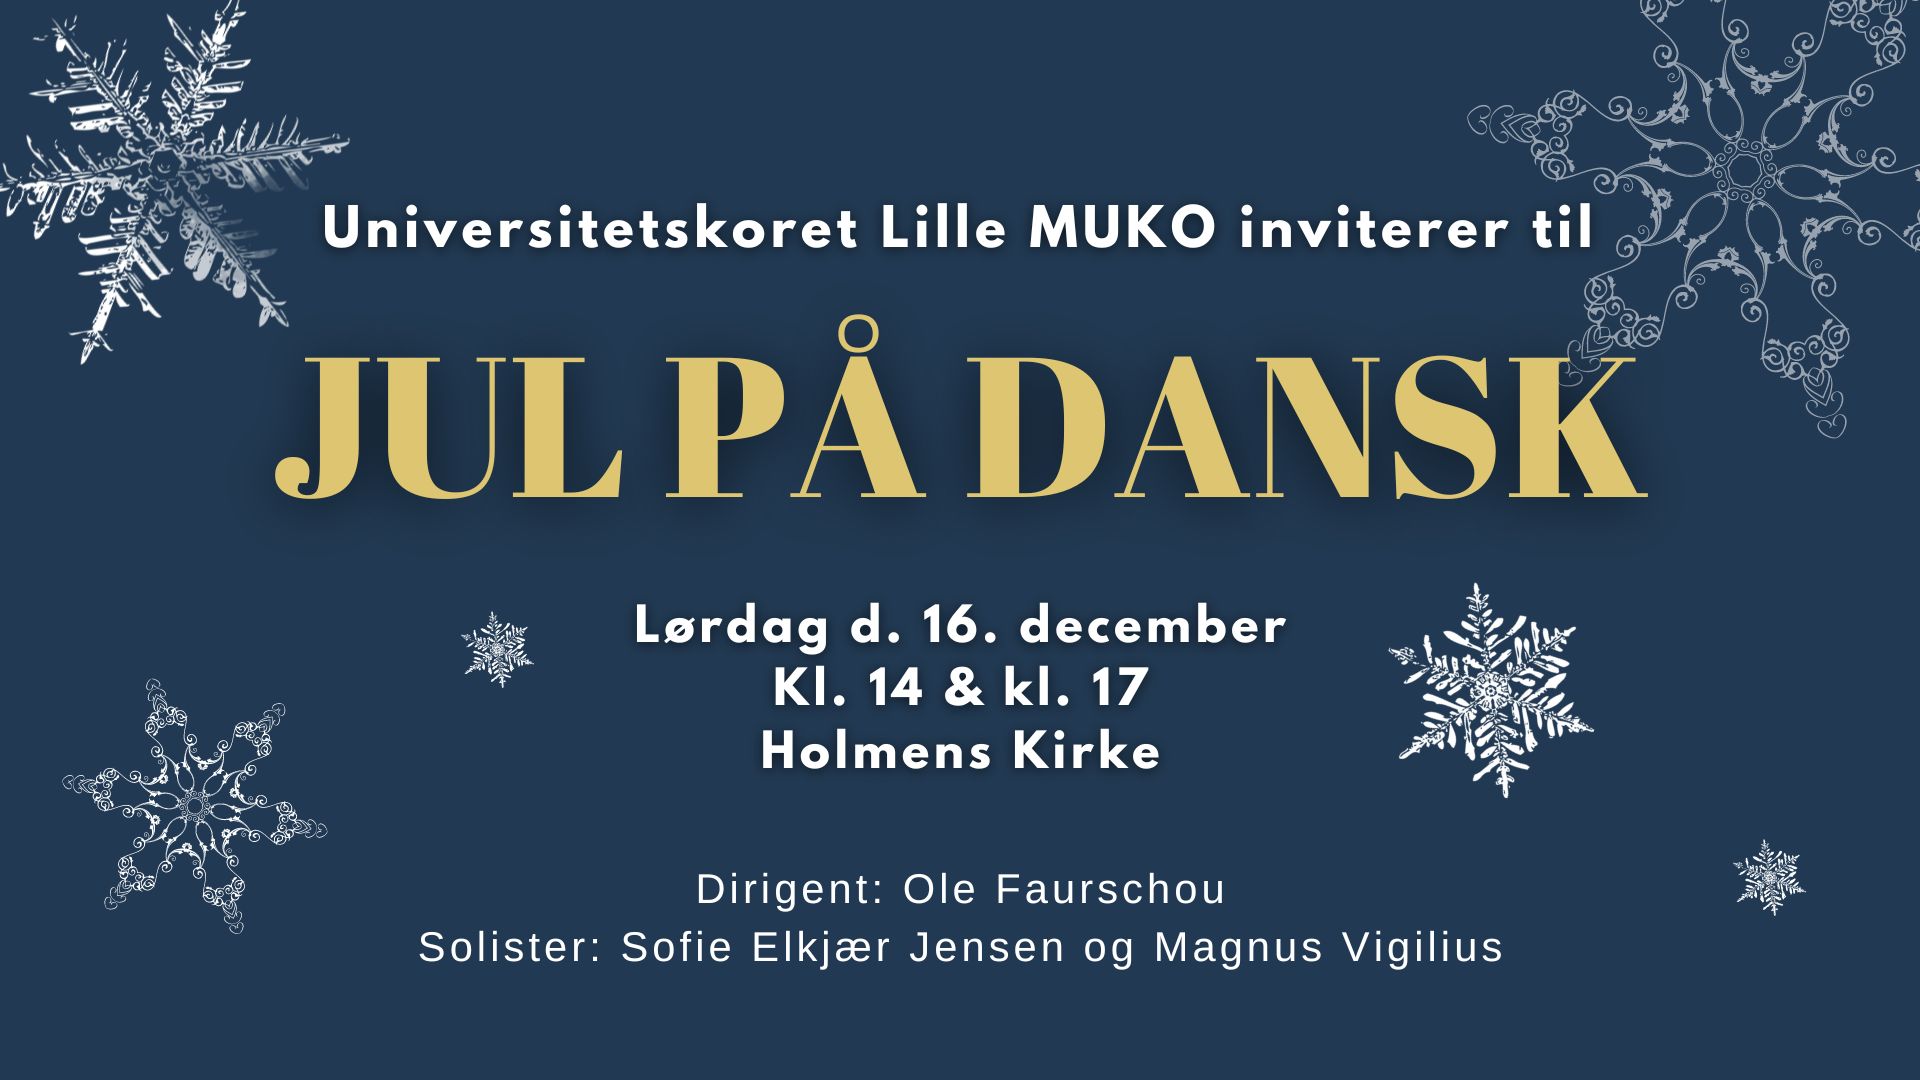 Jul p Dansk i Holmens Kirke i Kbenhavn med Universitetskoret Lille MUKO